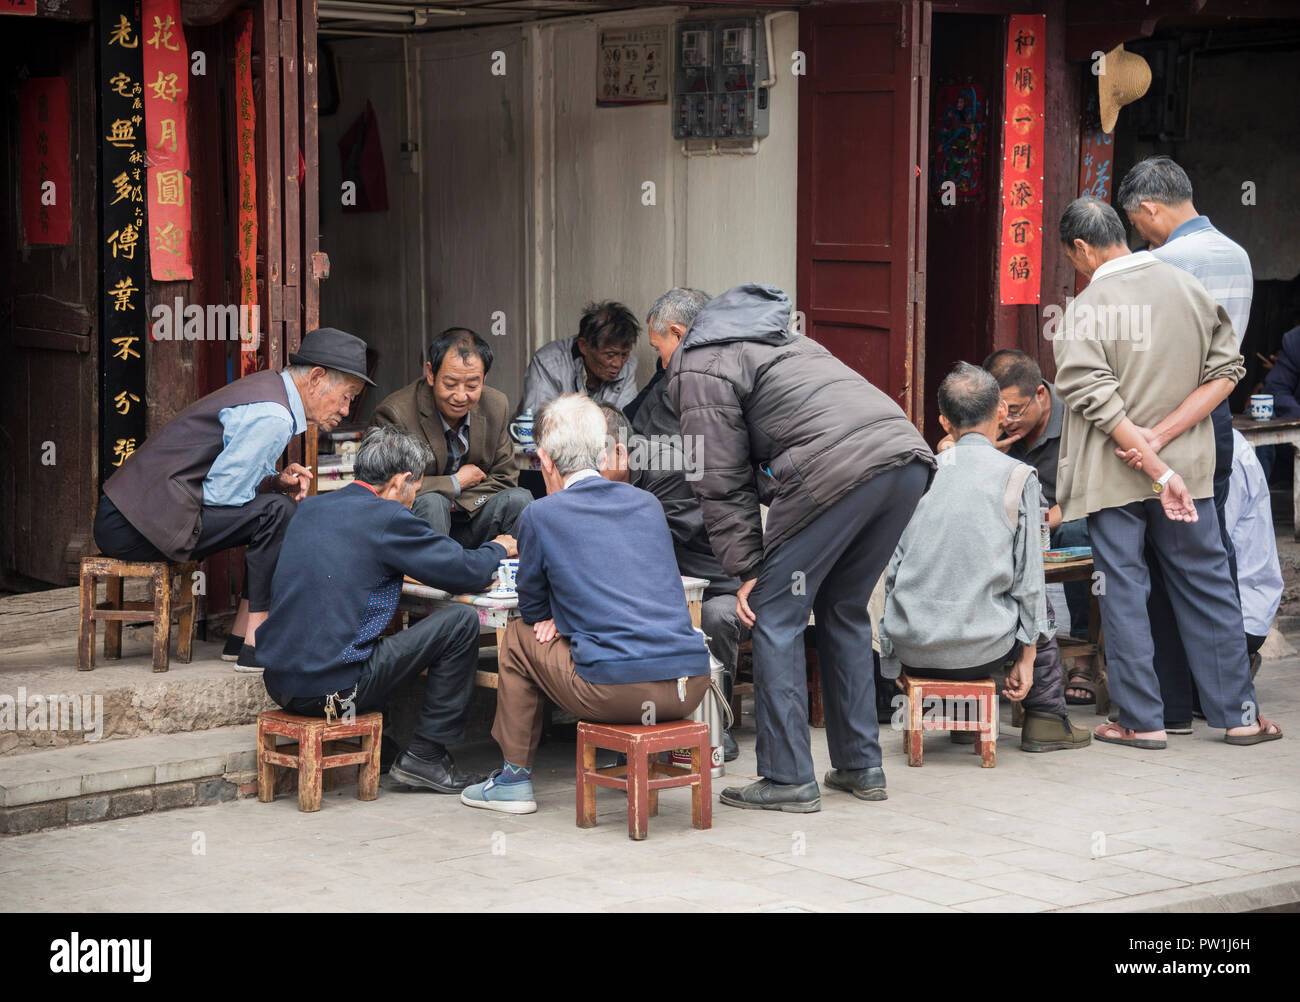 Die chinesischen Männer spielen brettspiel in einer Straße in Kunming, Provinz Yunnan im Südwesten Chinas. Stockfoto